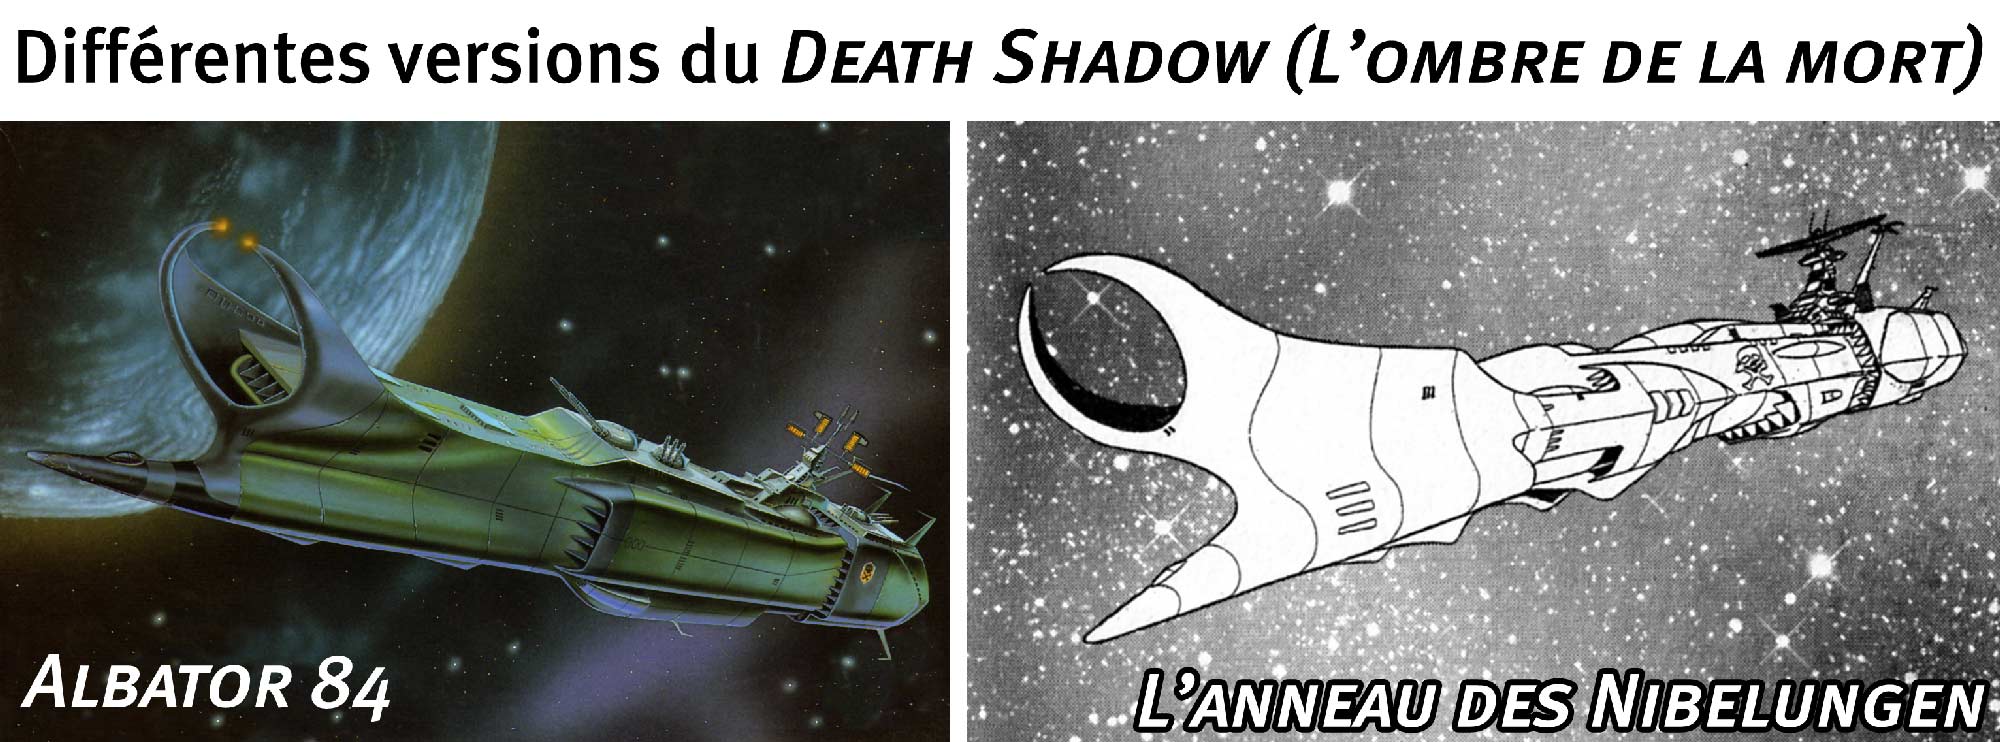 Comparaison entre la version du Death Shadow de Albator 84 et celui de L'anneau des Nibelungen (commandé par Great Harlock le père d'Albator)